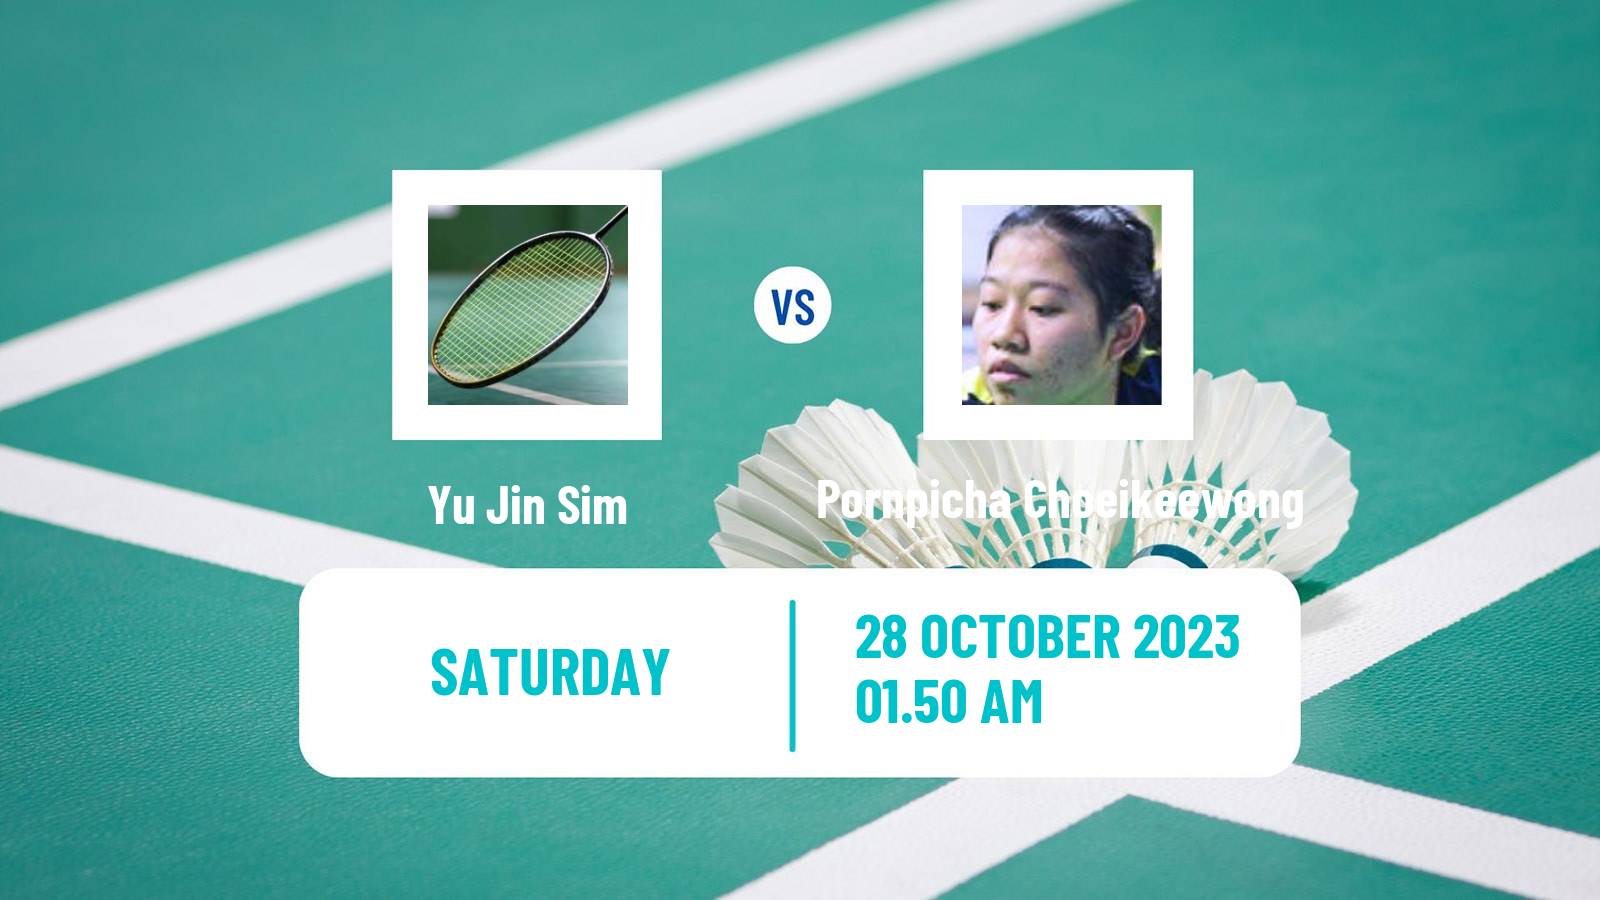 Badminton BWF World Tour Indonesia Masters 3 Women Yu Jin Sim - Pornpicha Choeikeewong